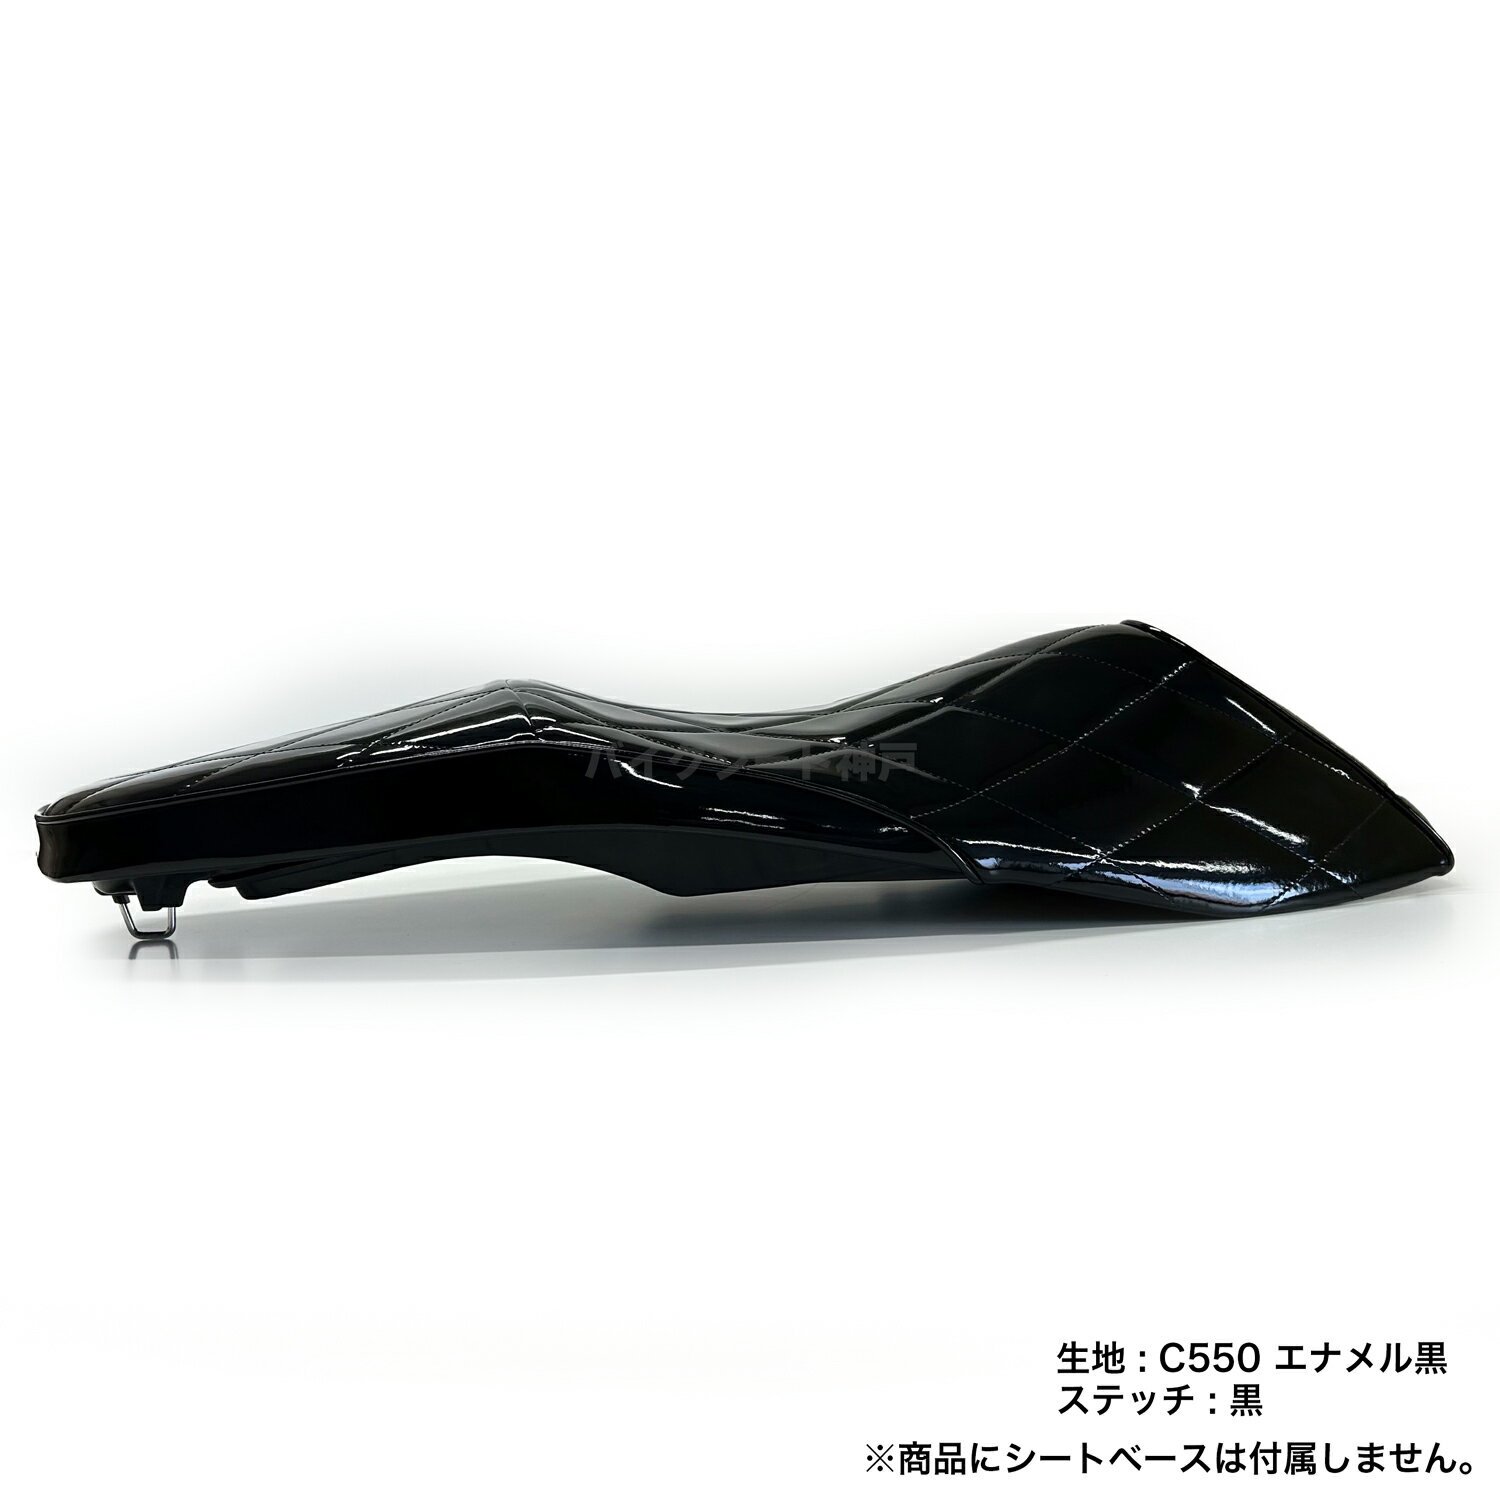 【全て日本製】【項目選択肢あり色変更可能】PCX 125 (JK05) PCX160 (KF47)シート カバー エナメル黒 ダイヤカット ミシンぬい HCH5714 3